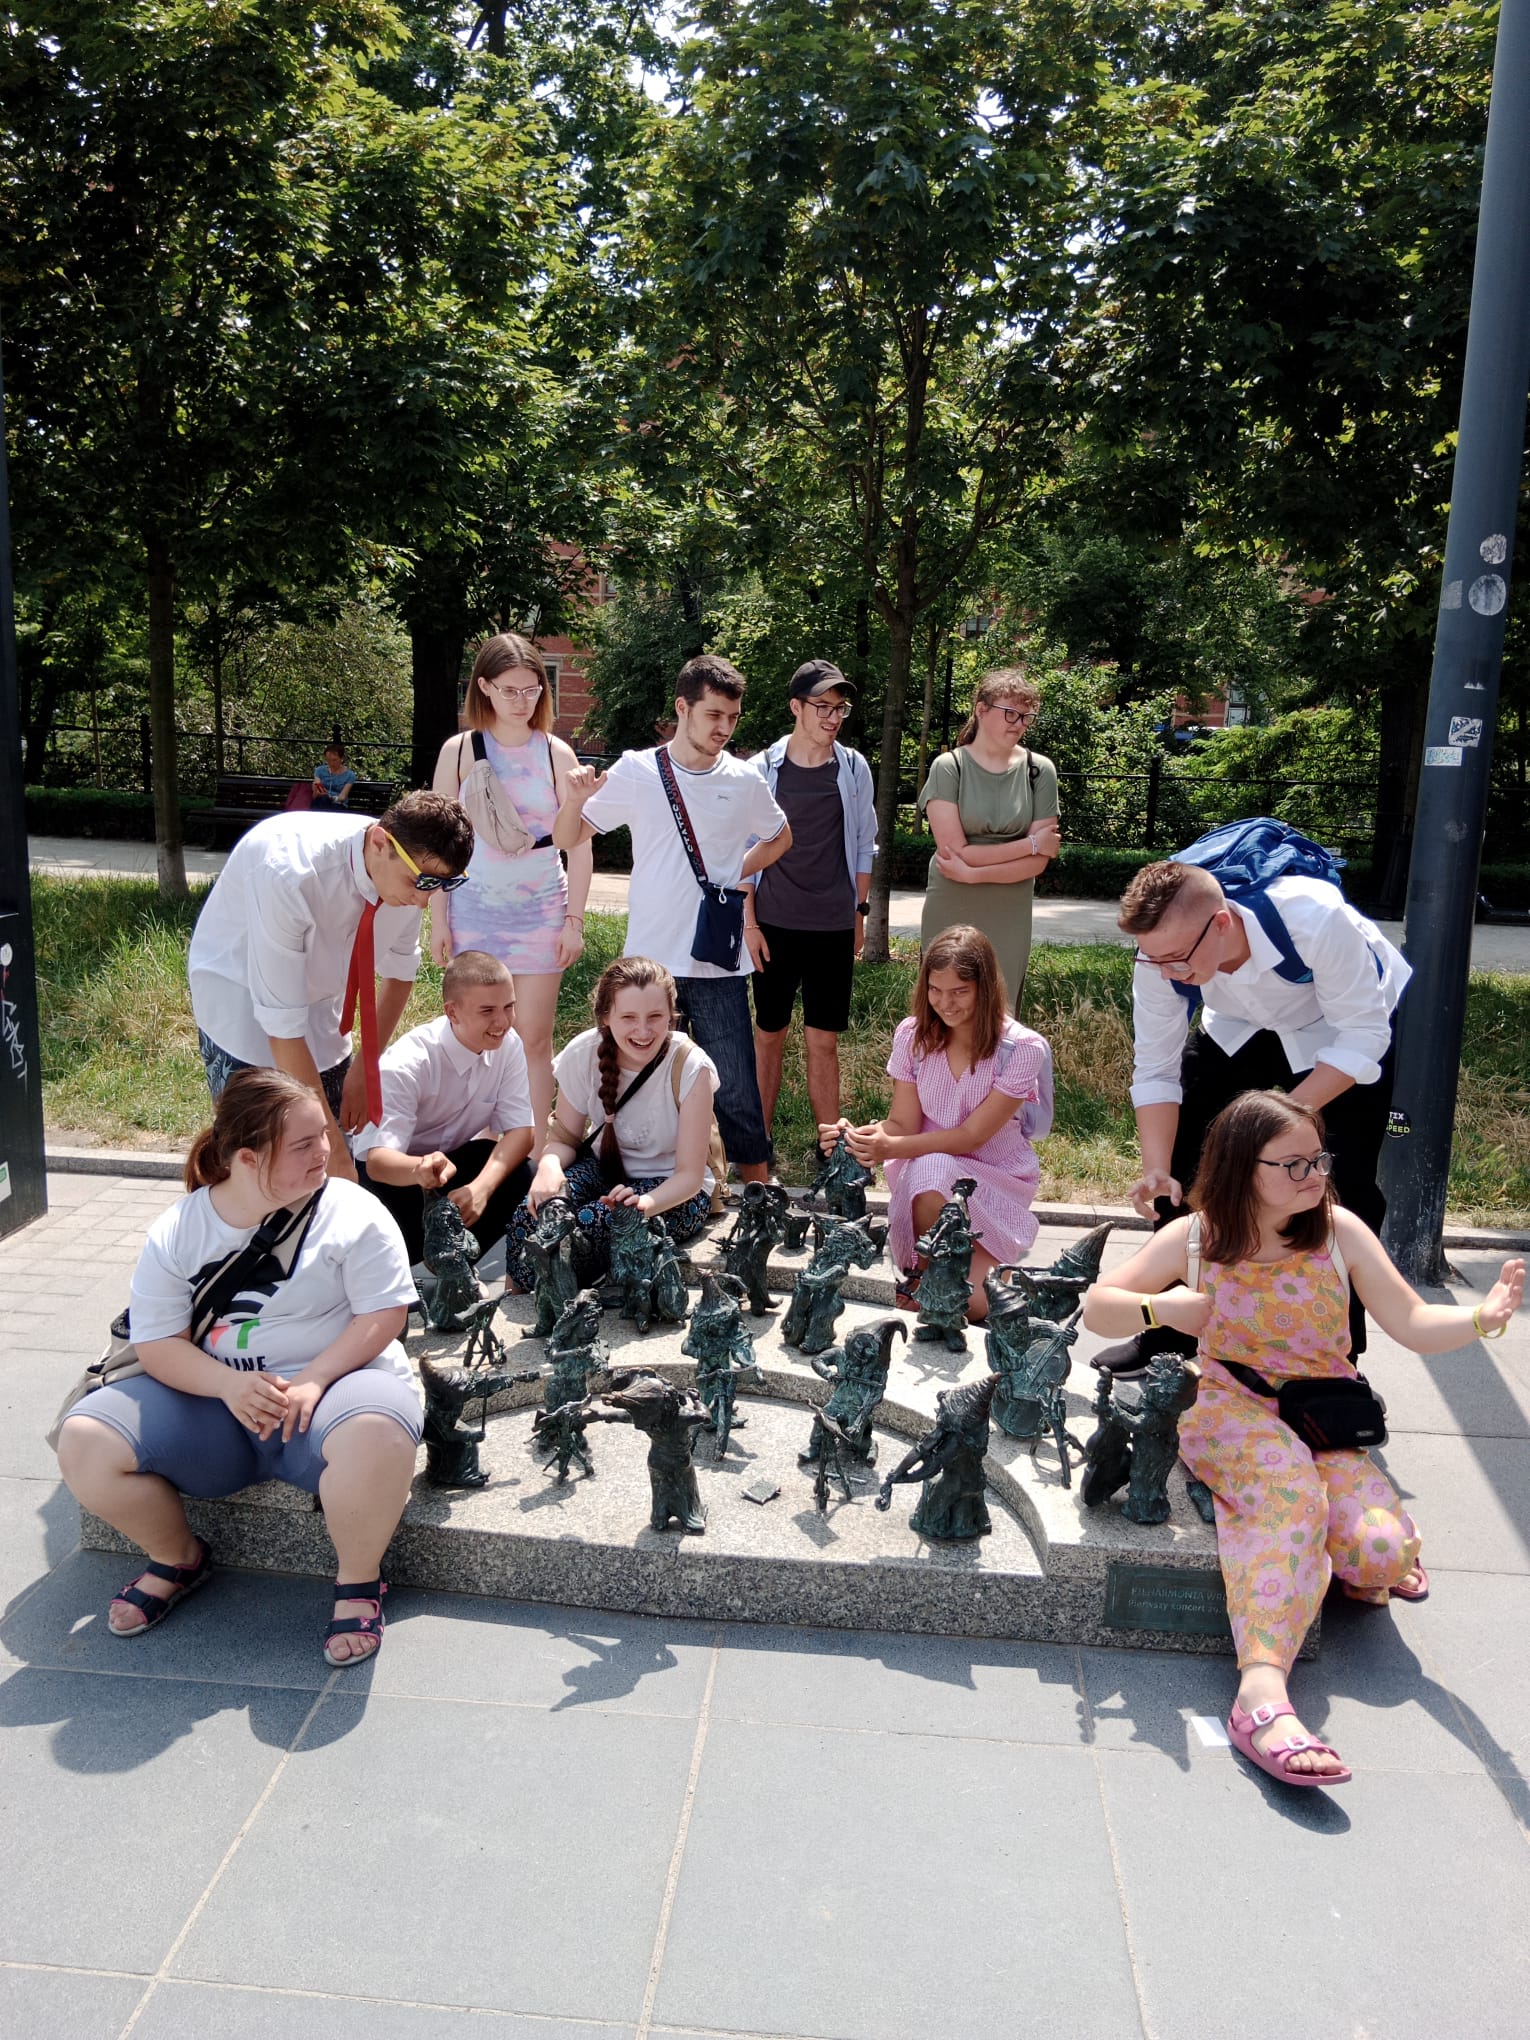 Młodzież zatrzymała się na Placu Wolności przy rzeźbie krasnali wrocławskich. Są to Krasnale Muzycy. Uczniowie na zdjęciu naśladują orkiestrę.